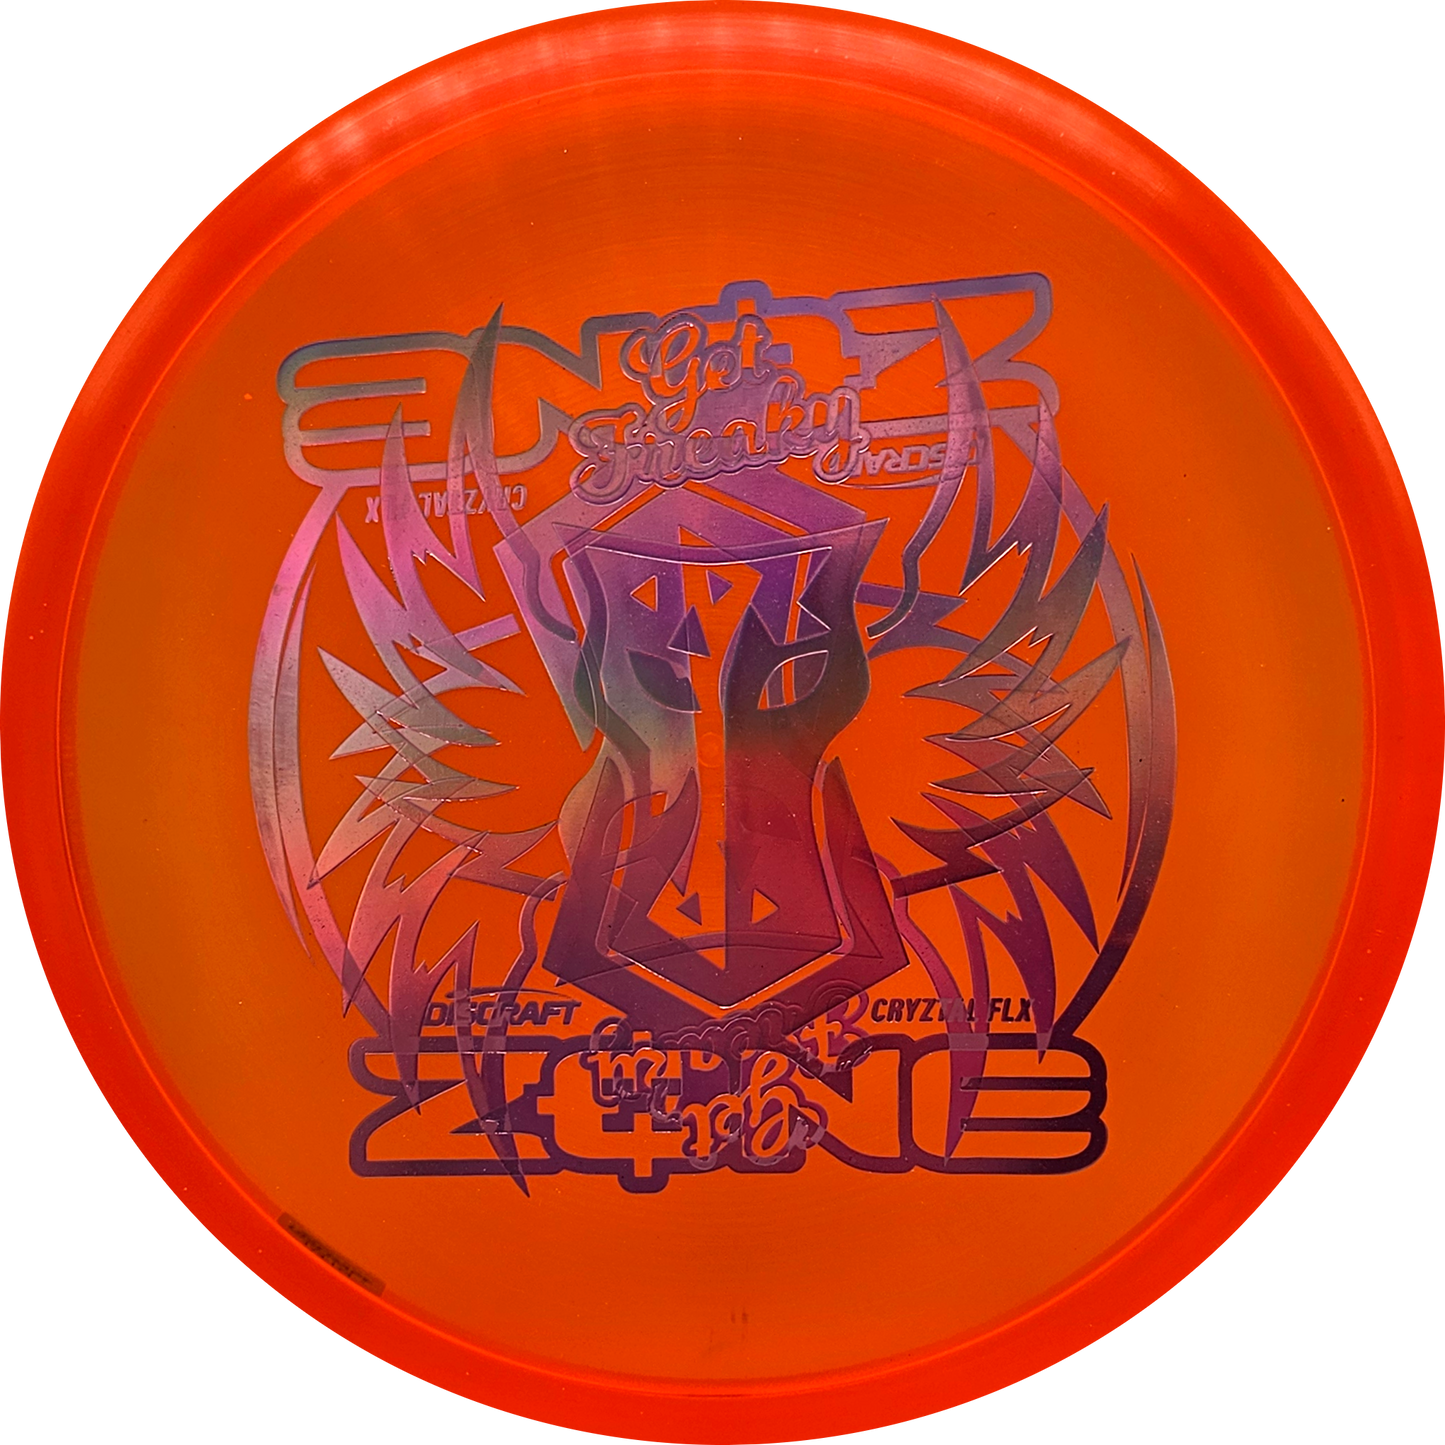 Discraft Brodie Smith Cryztal FLX Zone - Misprints